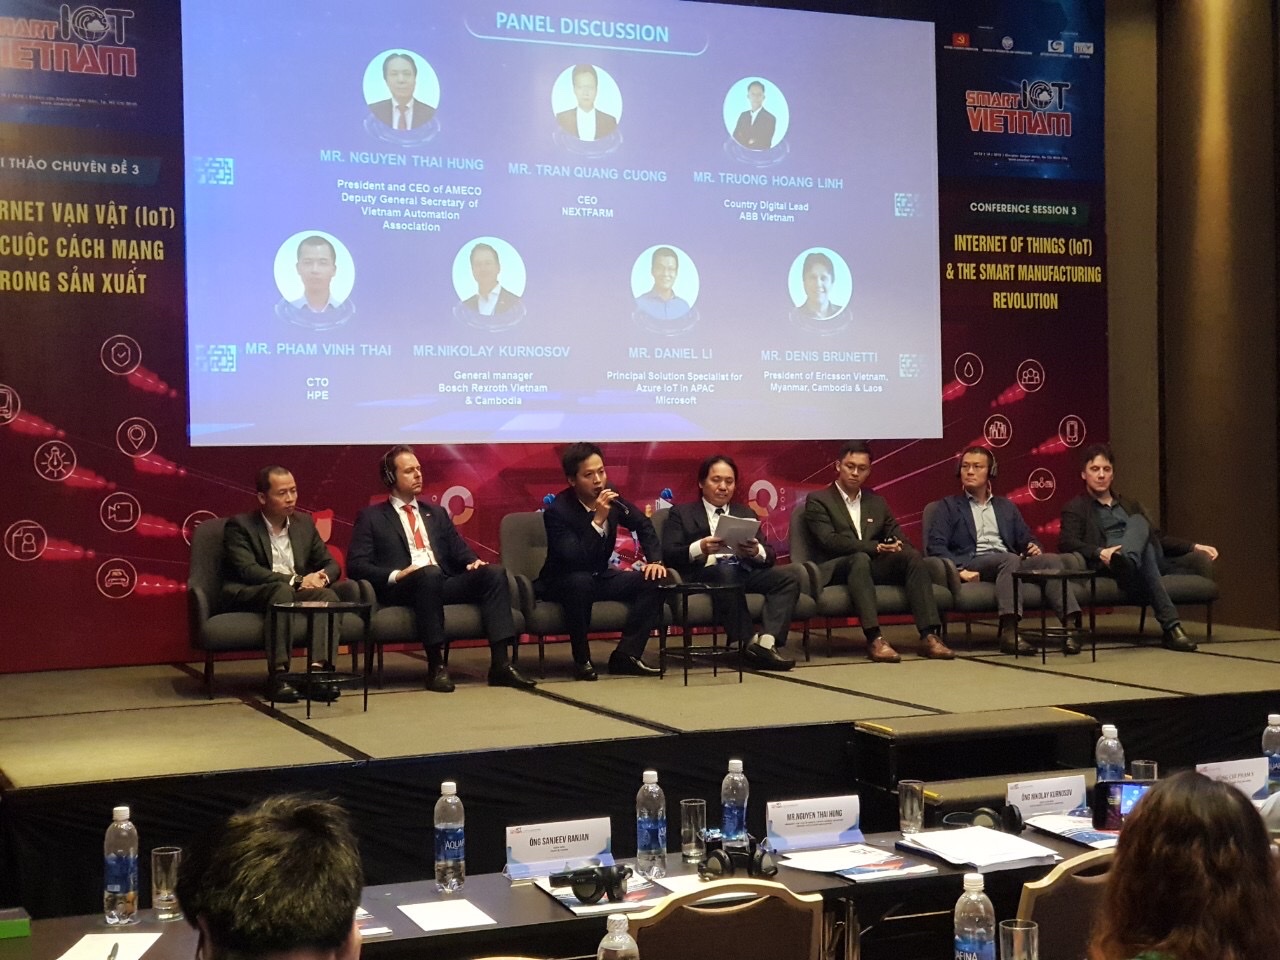 CEO PosX tại Hội thảo và Triển lãm quốc tế Smart IoT Việt Nam: “Doanh nghiệp Công nghệ Việt Nam chúng tôi hoàn toàn có thể làm các sản phẩm công nghệ tương đương hoặc thậm chí hơn nước ngoài nếu tập trung”